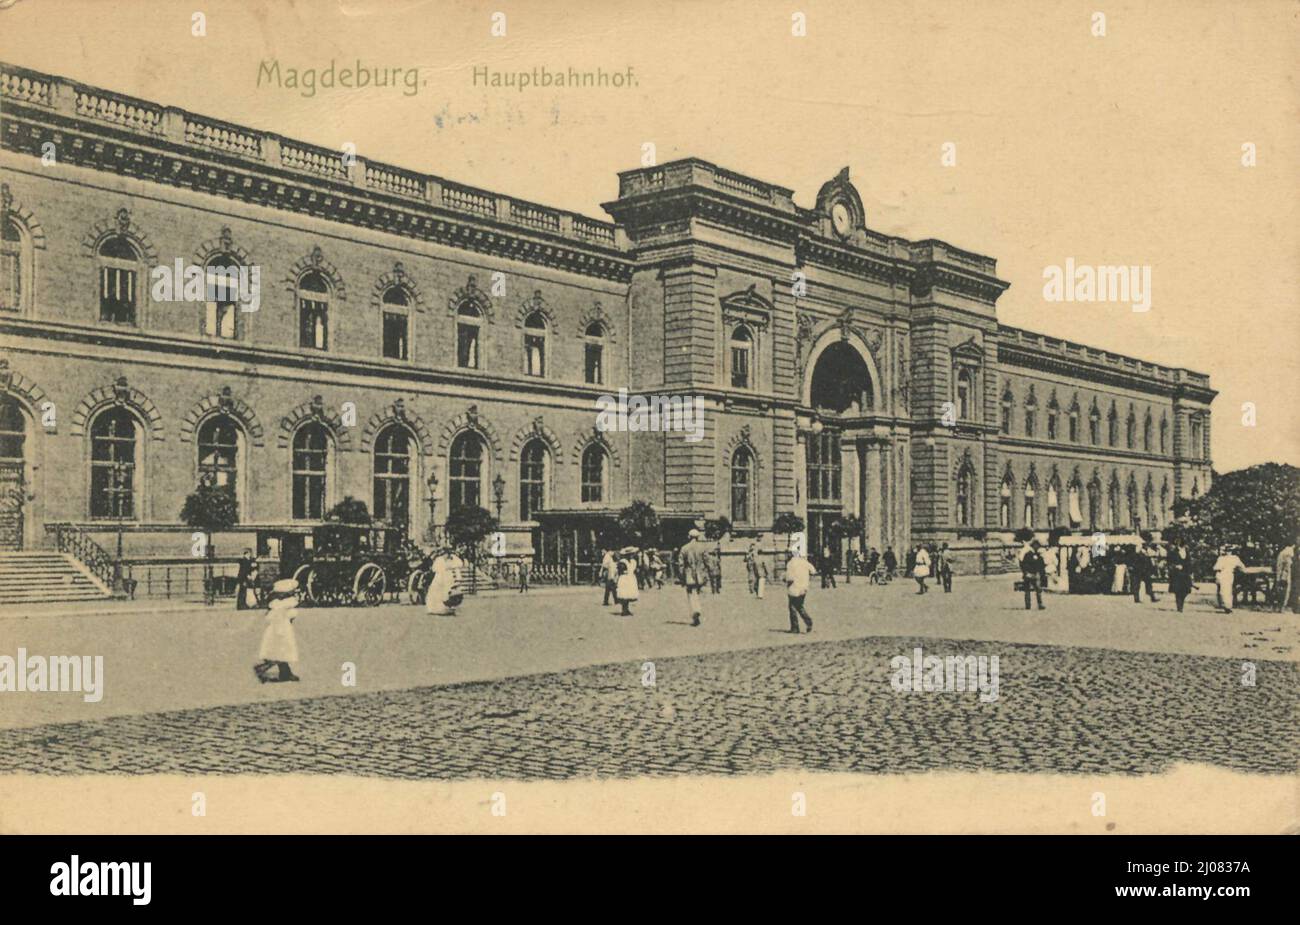 Hauptbahnhof in Magdeburg, Sachsen-Anhalt, Deutschland, Ansicht um ca 1910, digitale Reproduktion einer historischen Postkarte, domaine public, aus der damaaligen Zeit, genaues Datum unbekannt Banque D'Images